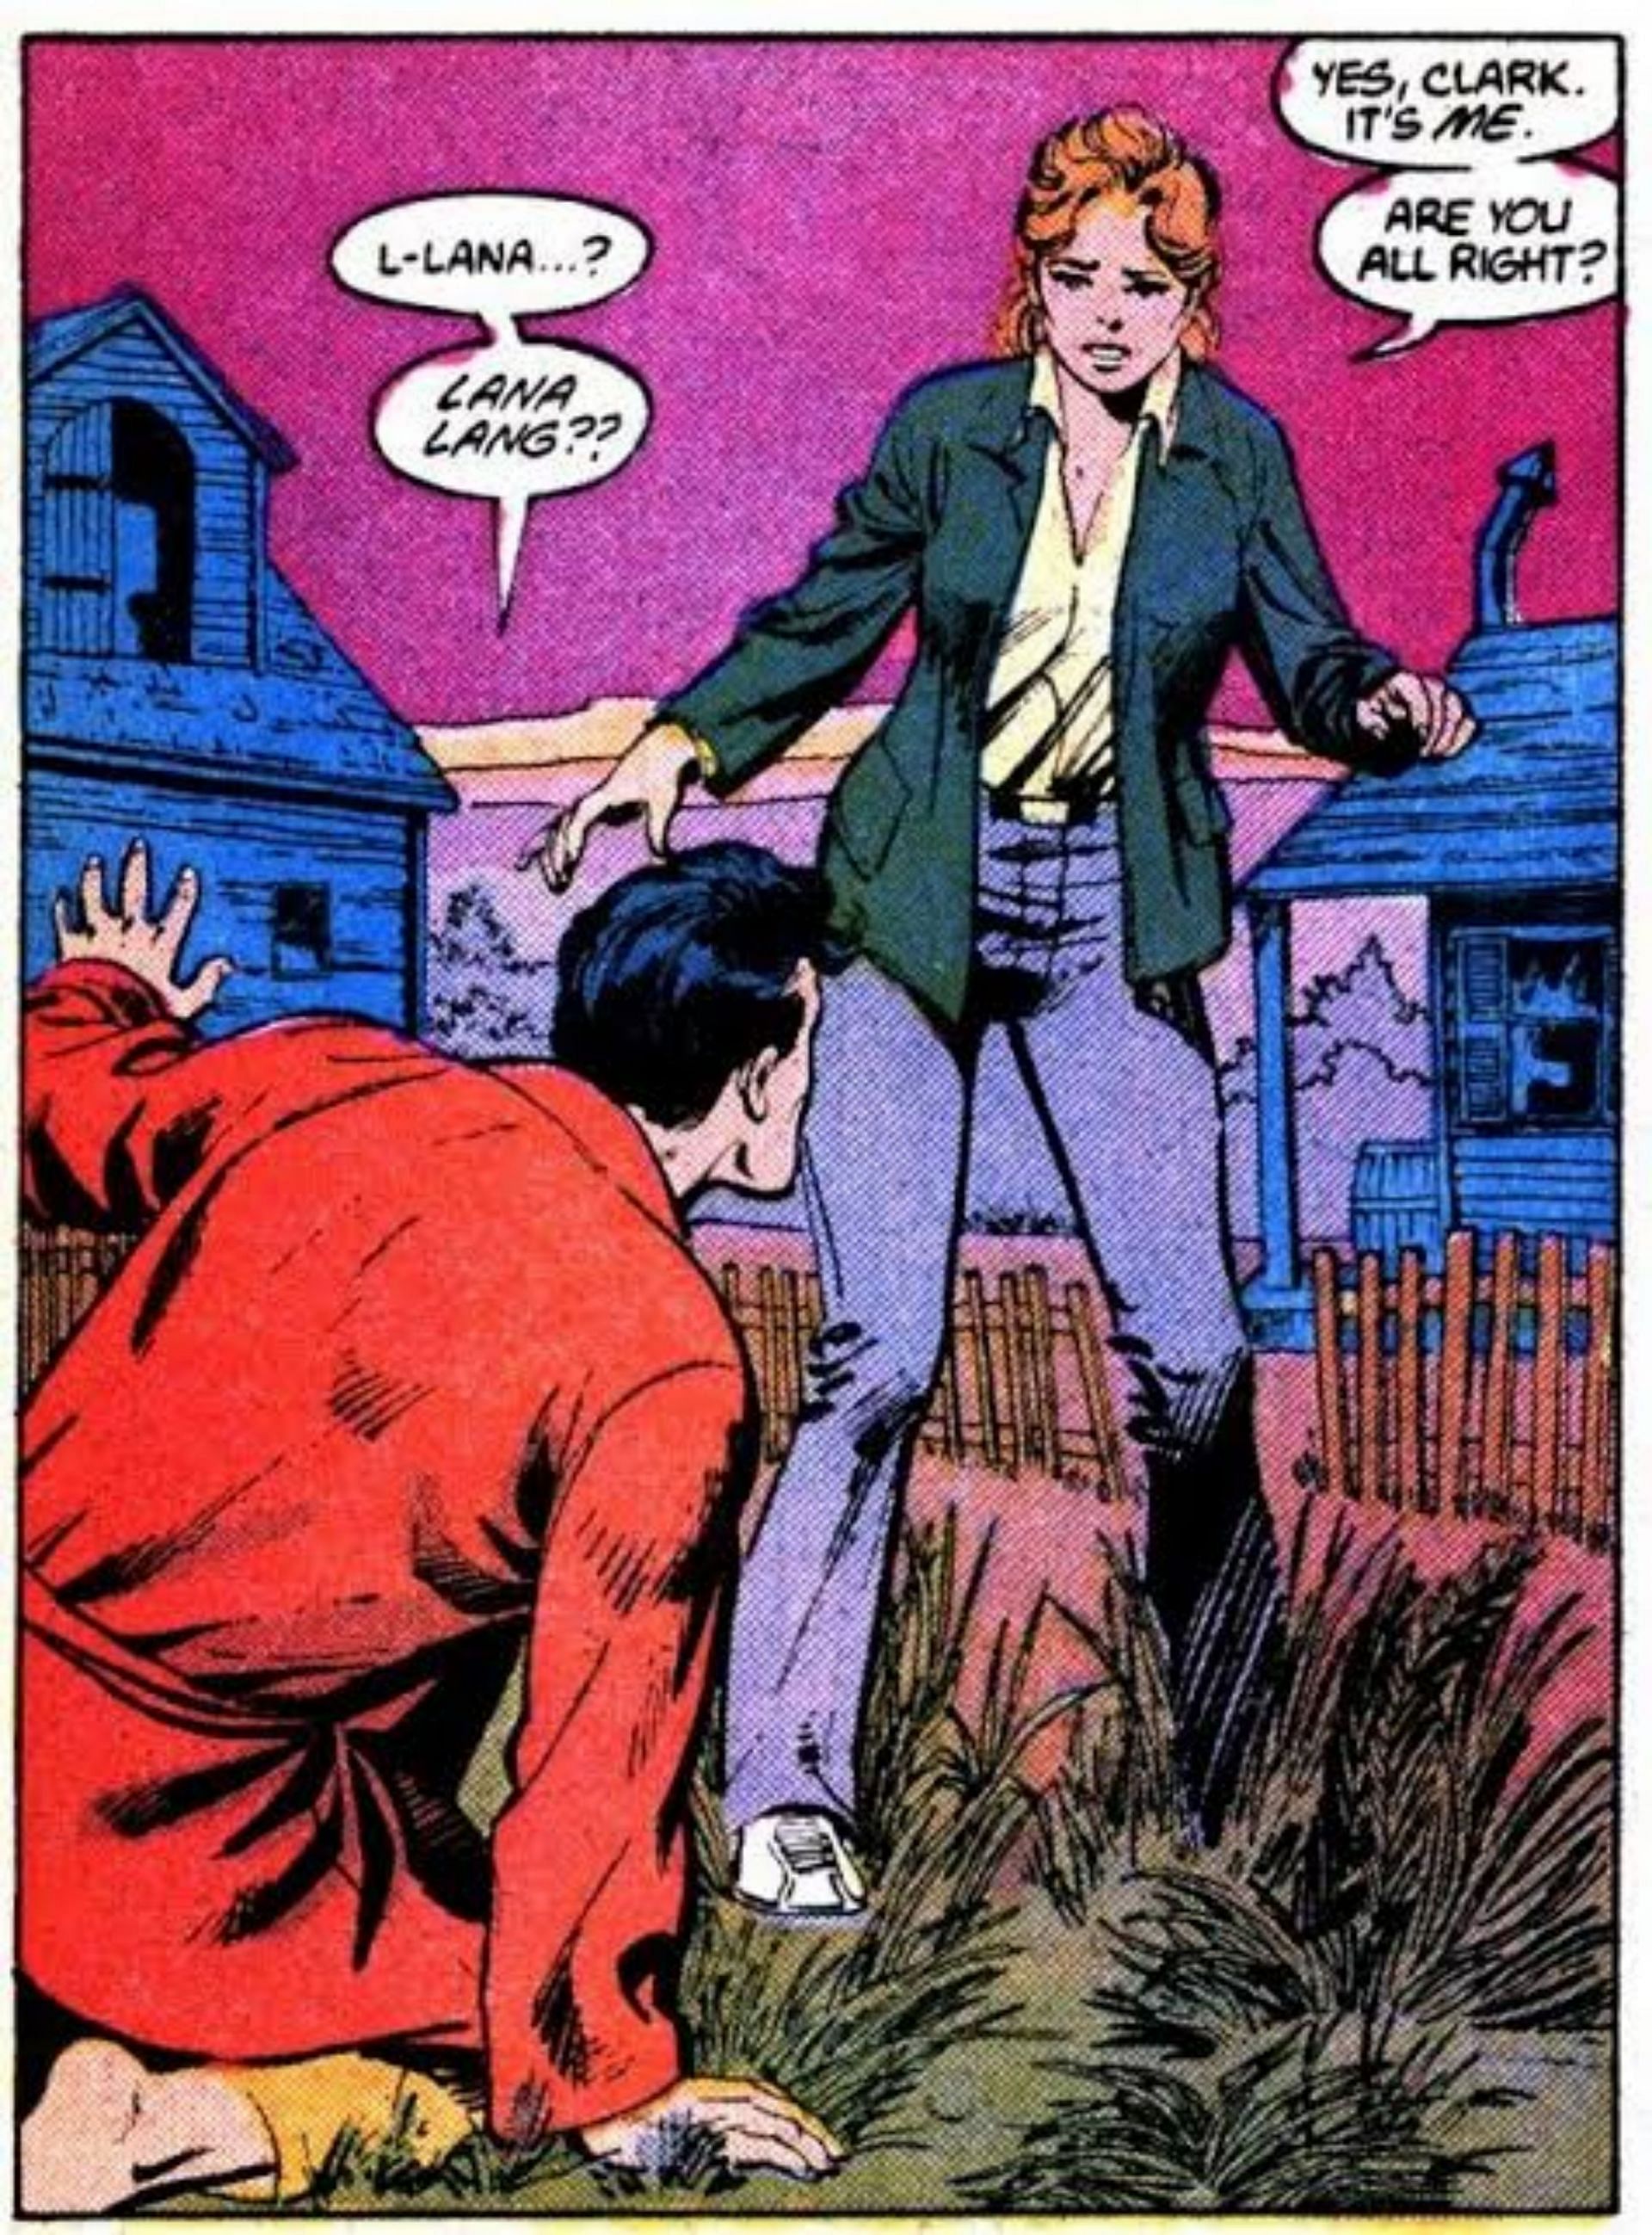 Clark Kent and Lana Lang (Image via DC Comics)